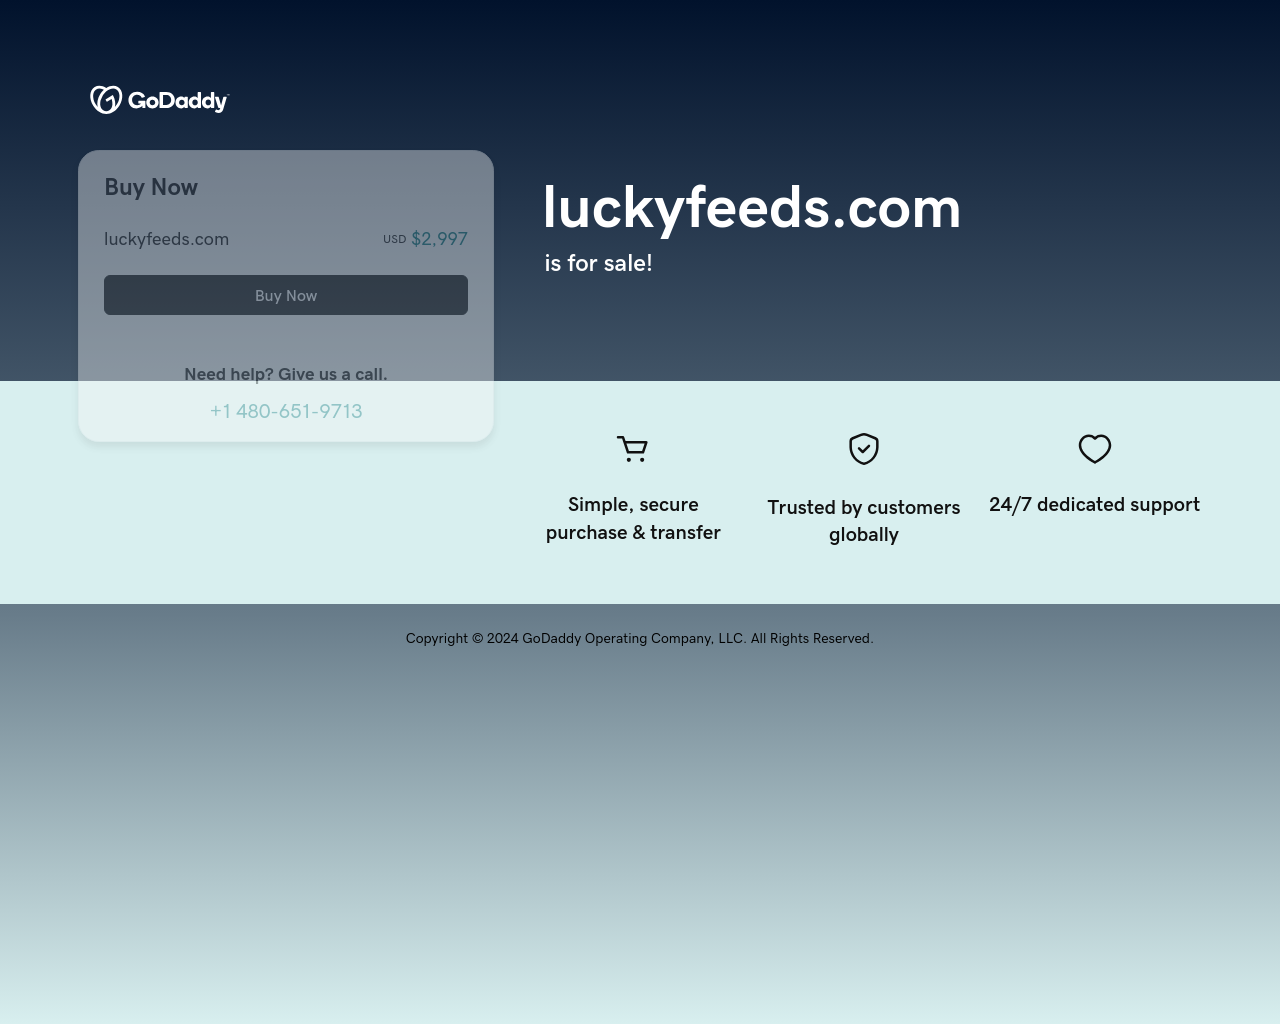 luckyfeeds.com